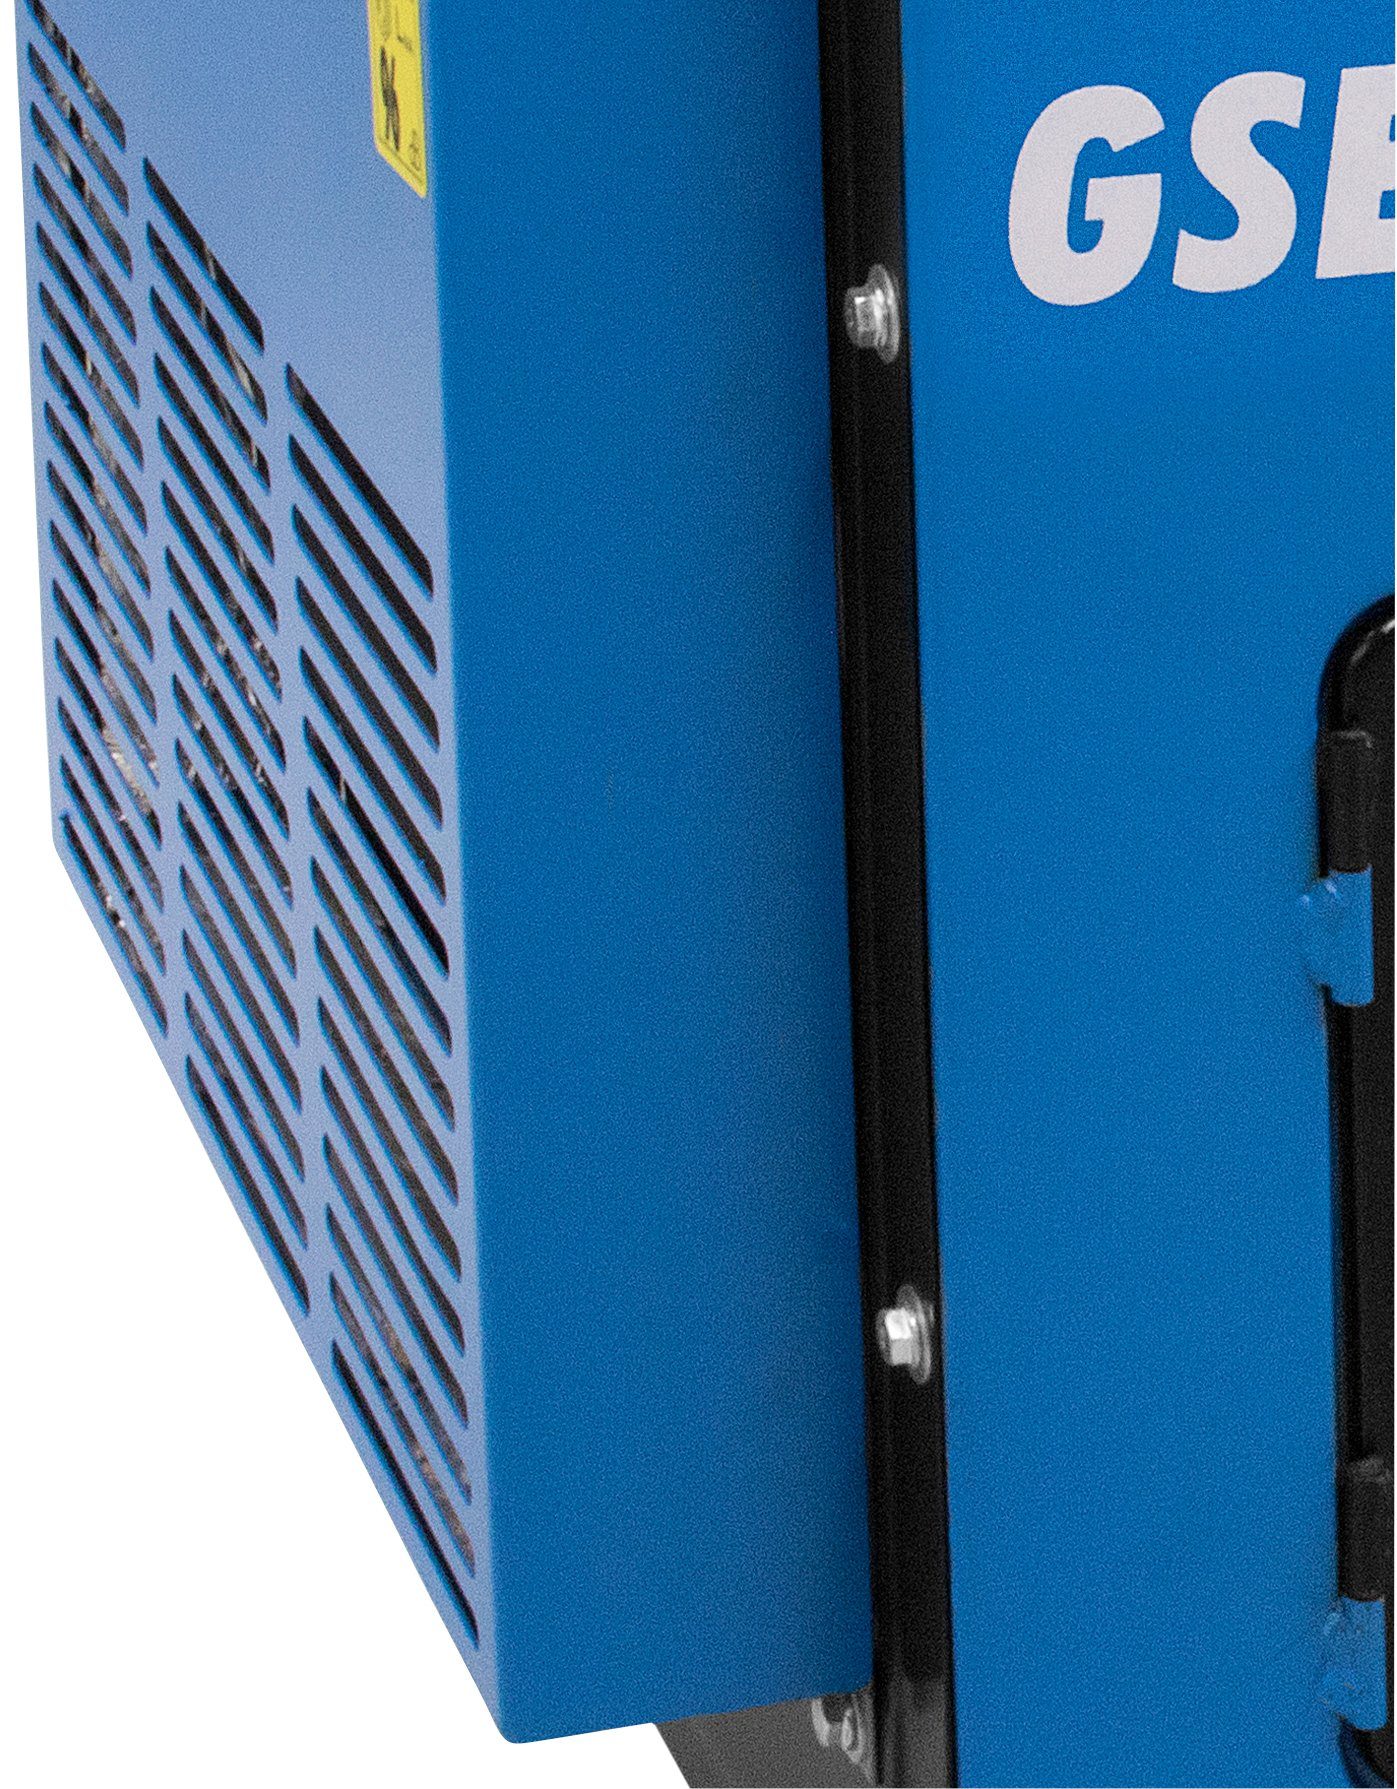 Güde Stromerzeuger GSE 5501 DS, 230 x CEE A/400 V/50 2 Hz in Schuko kW, 16 V/50 1 x 6,5 Hz